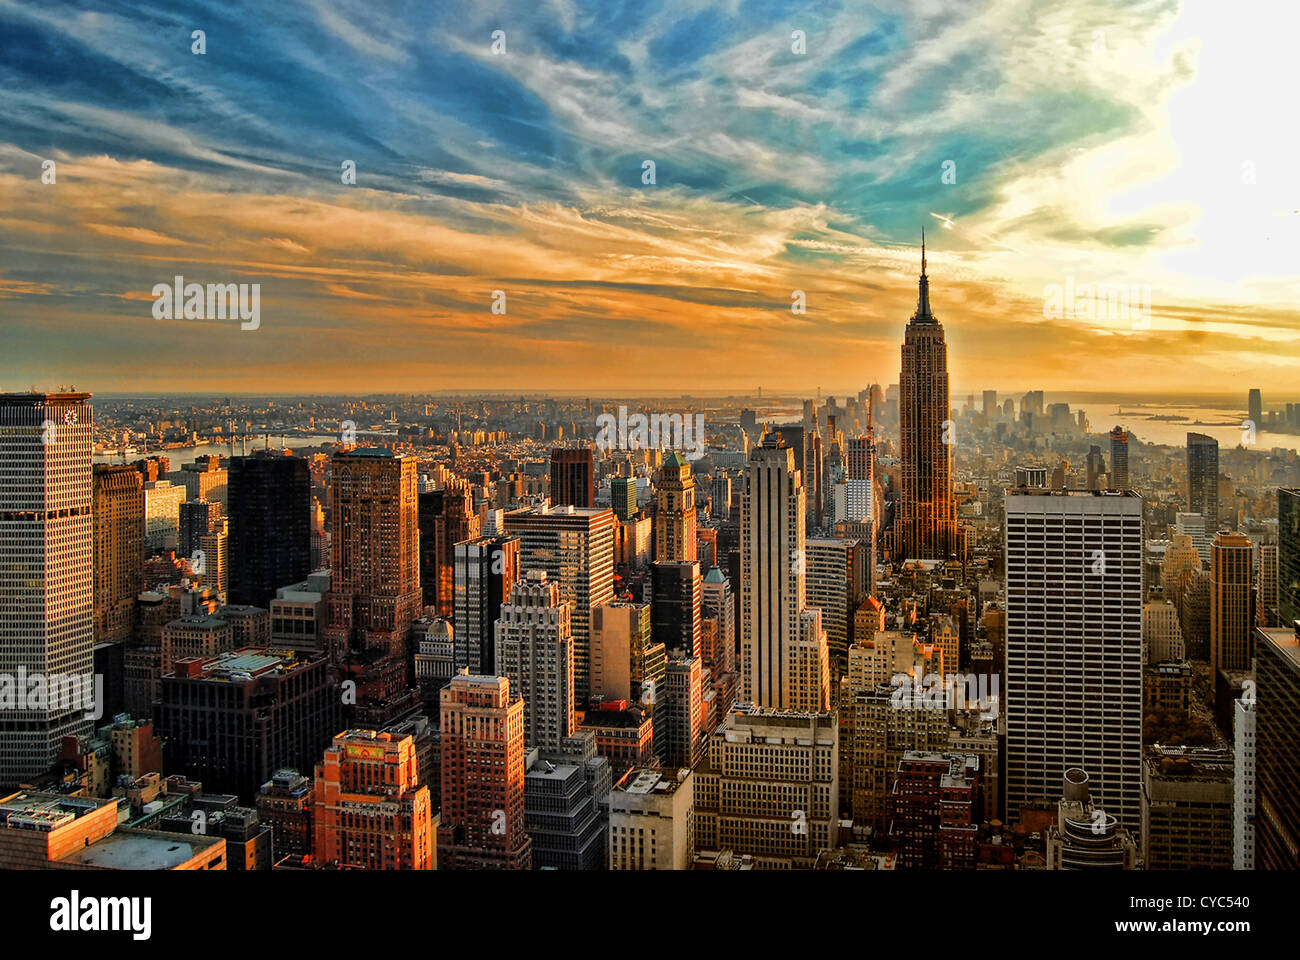 Image HDR donnant sur la moitié sud de Manhattan, New York City, avec l'Empire State Building. Banque D'Images